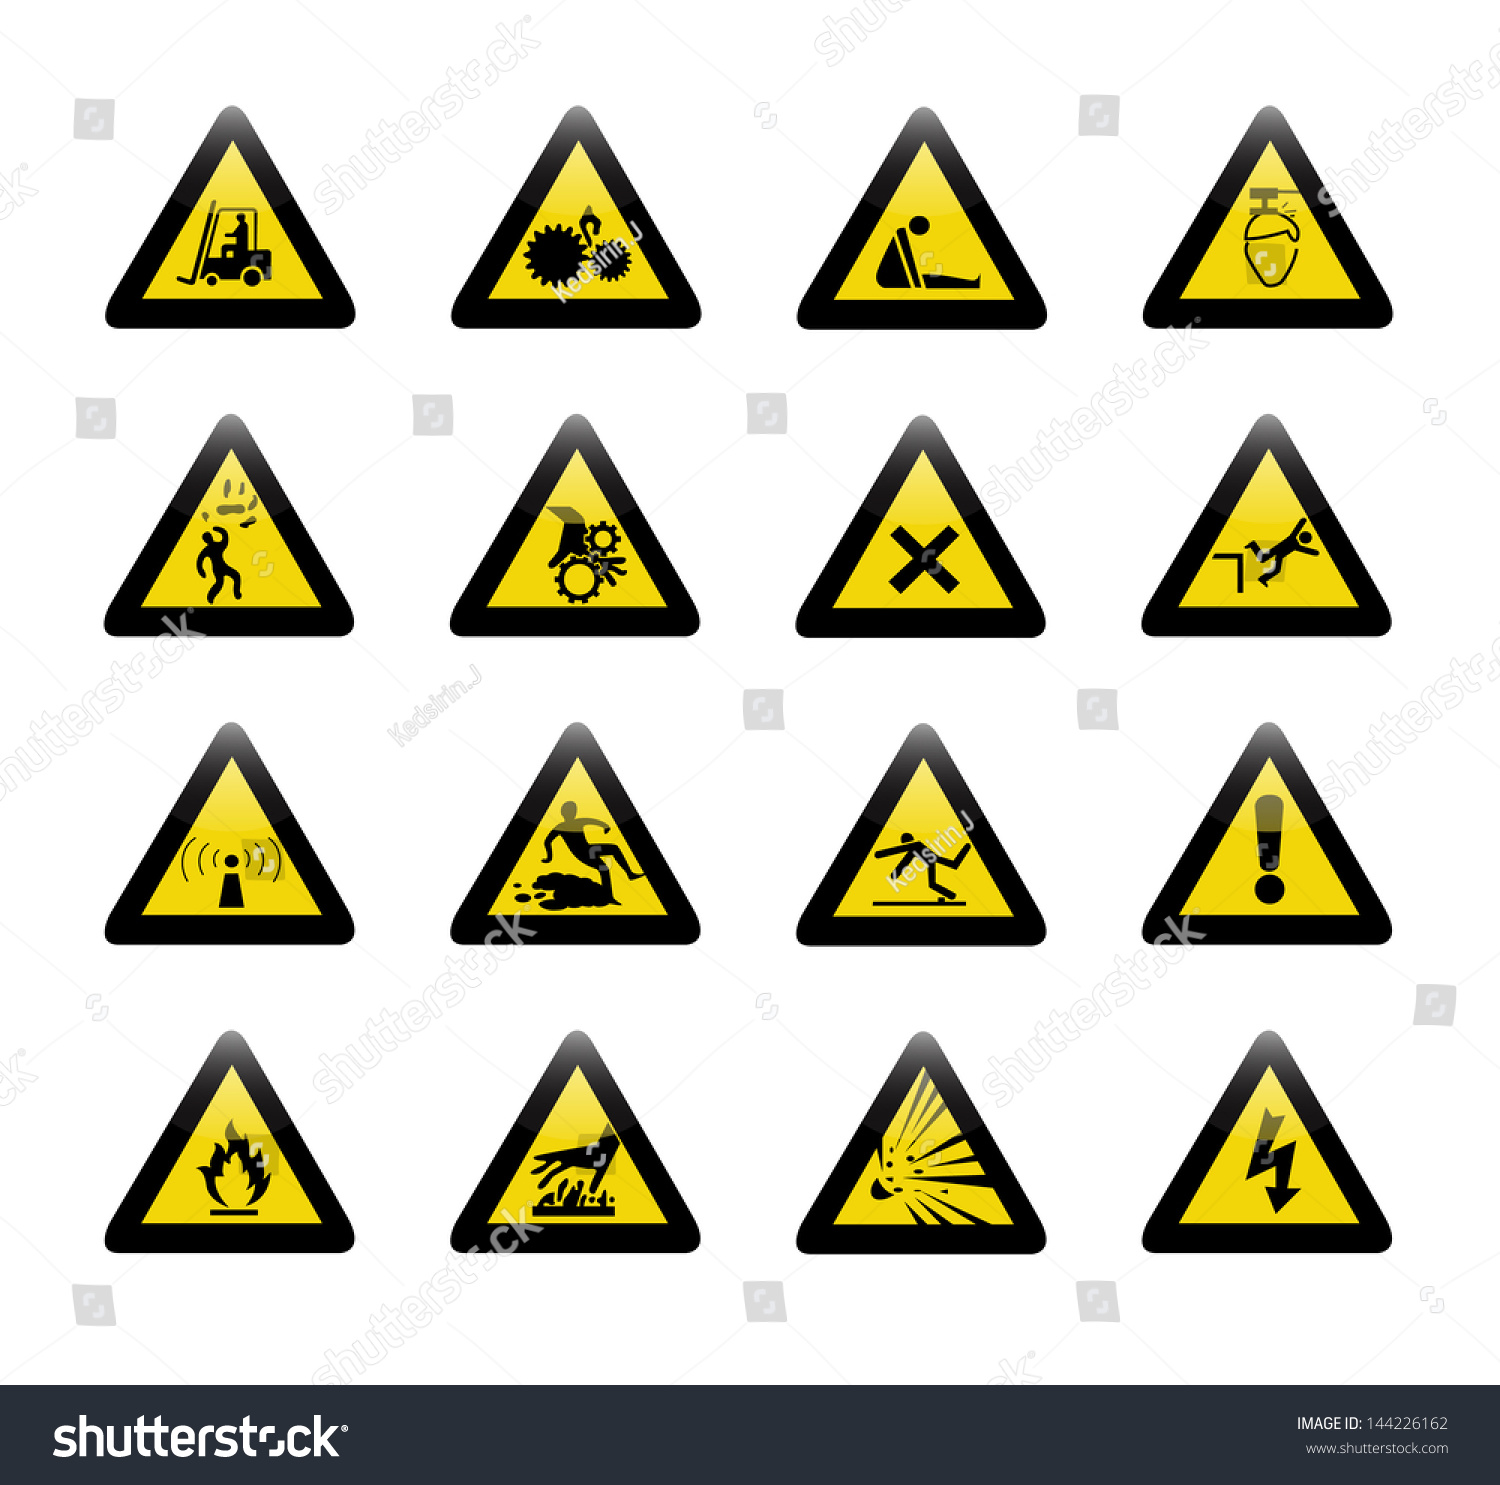 Danger Warning Sign Stock Vector 144226162 : Shutterstock